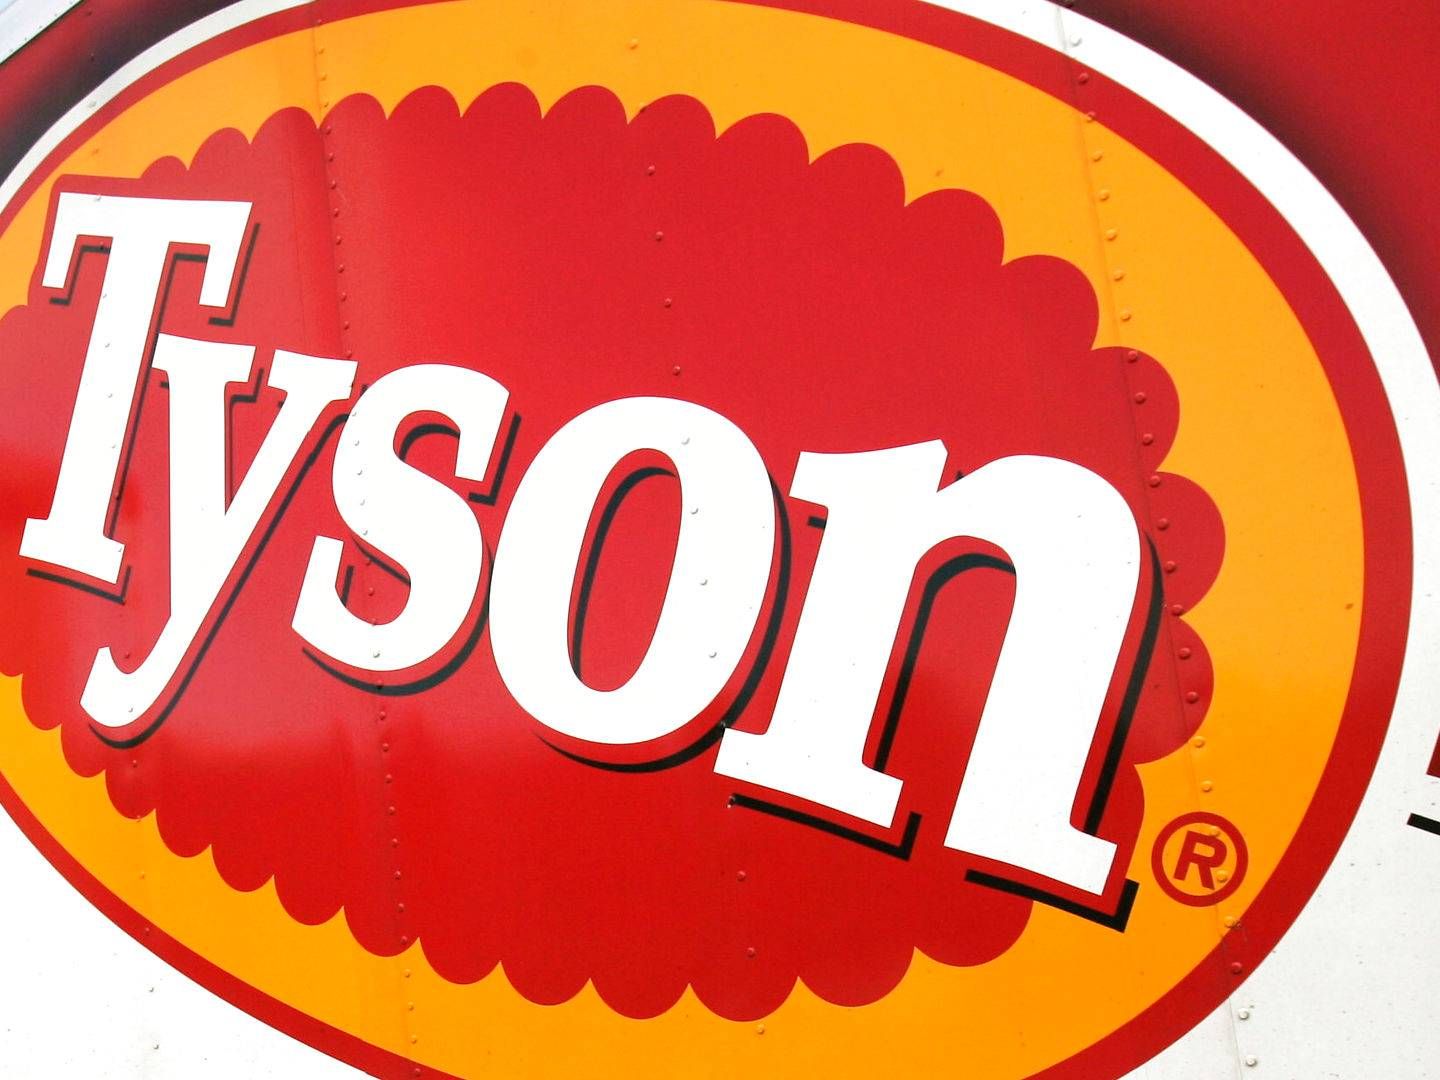 I sit seneste regnskab kunne Tyson Foods fremlægge en omsætning på 42,2 mia. dollar, svarende til 285 mia. kr. | Foto: Danny Johnston/AP/Ritzau Scanpix